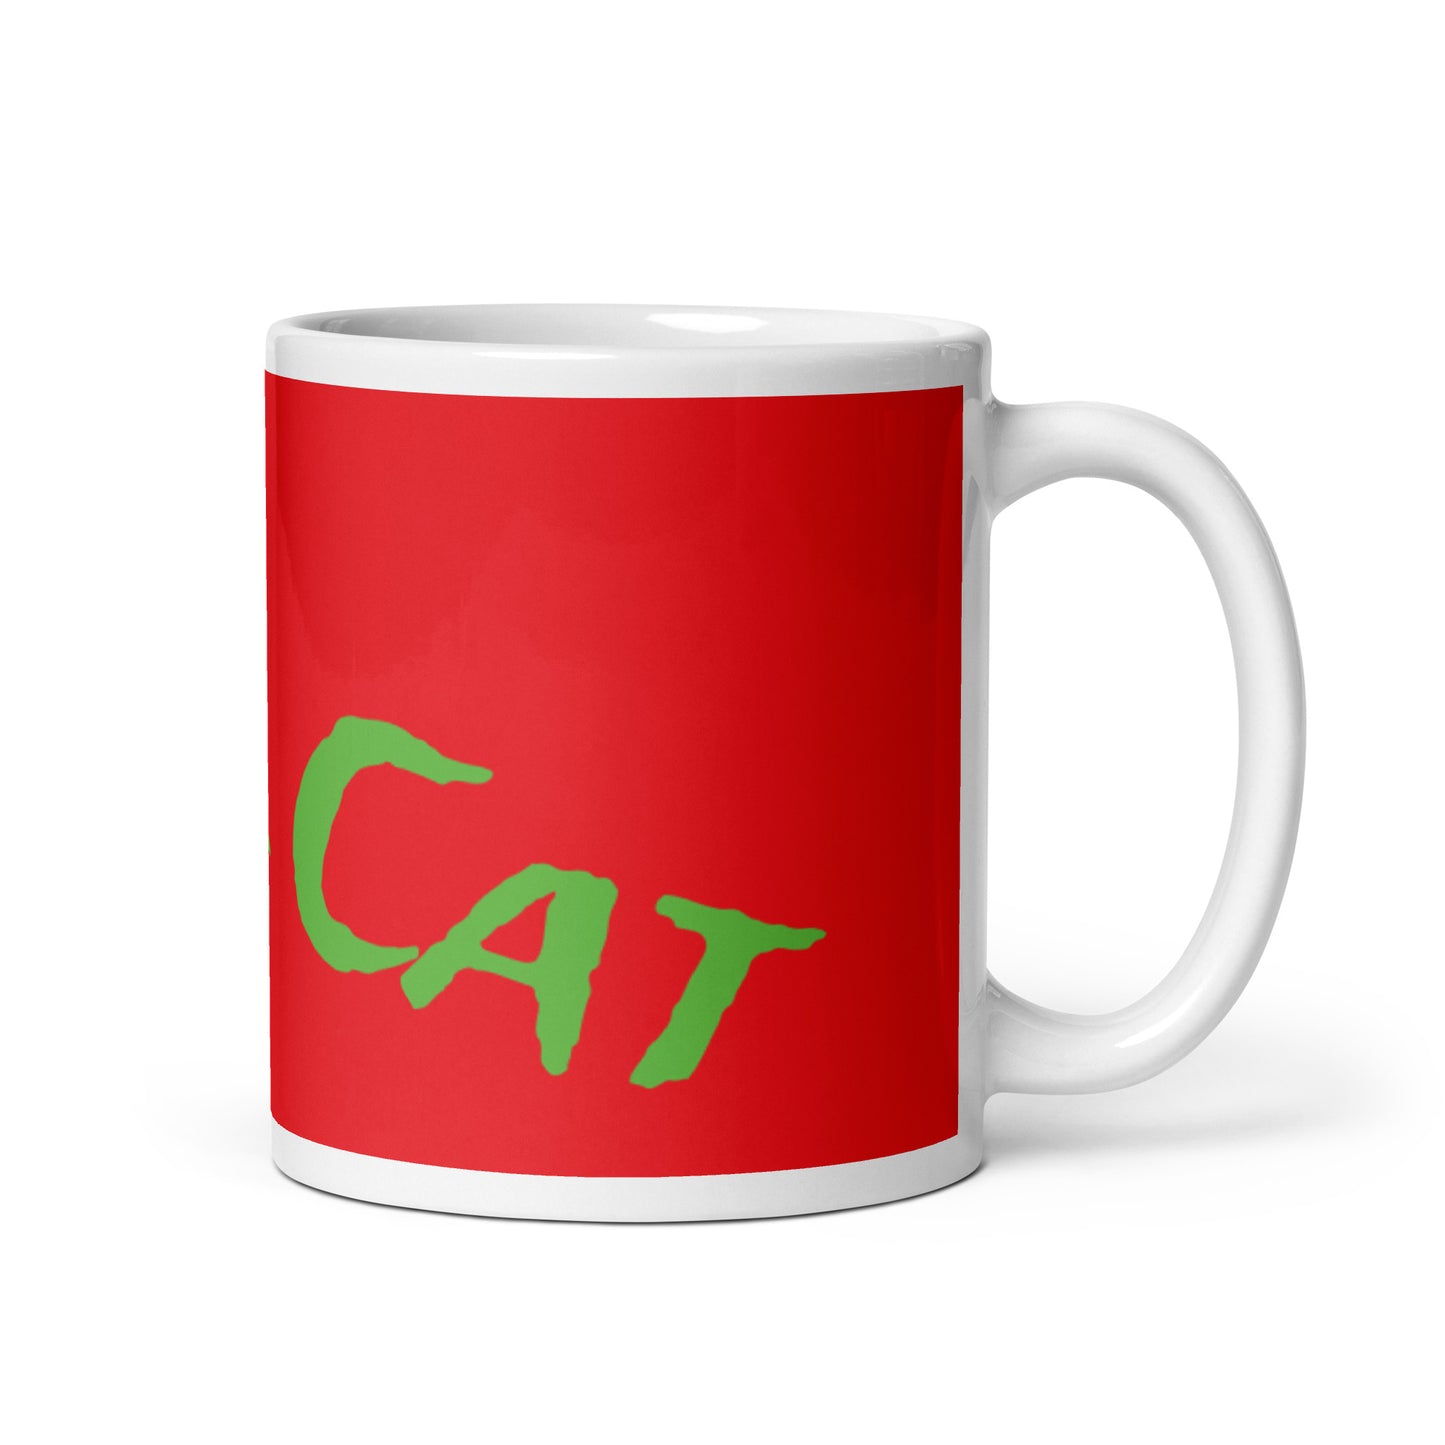 Red White Glossy Mug - Cool Cat